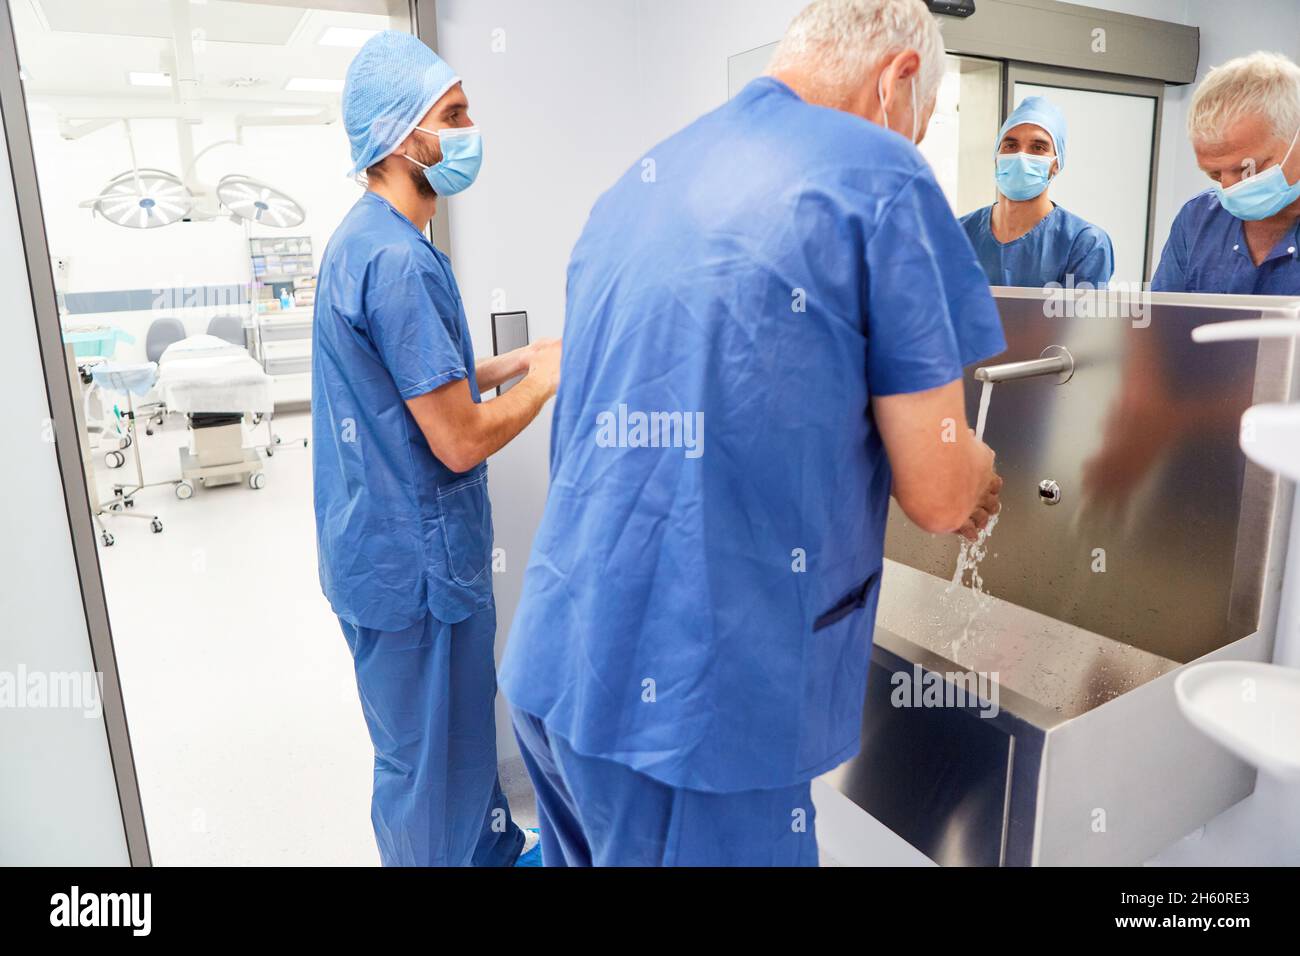 Die Chirurgen waschen ihre Hände zur Desinfektion am Waschbecken vor dem Operationssaal Stockfoto